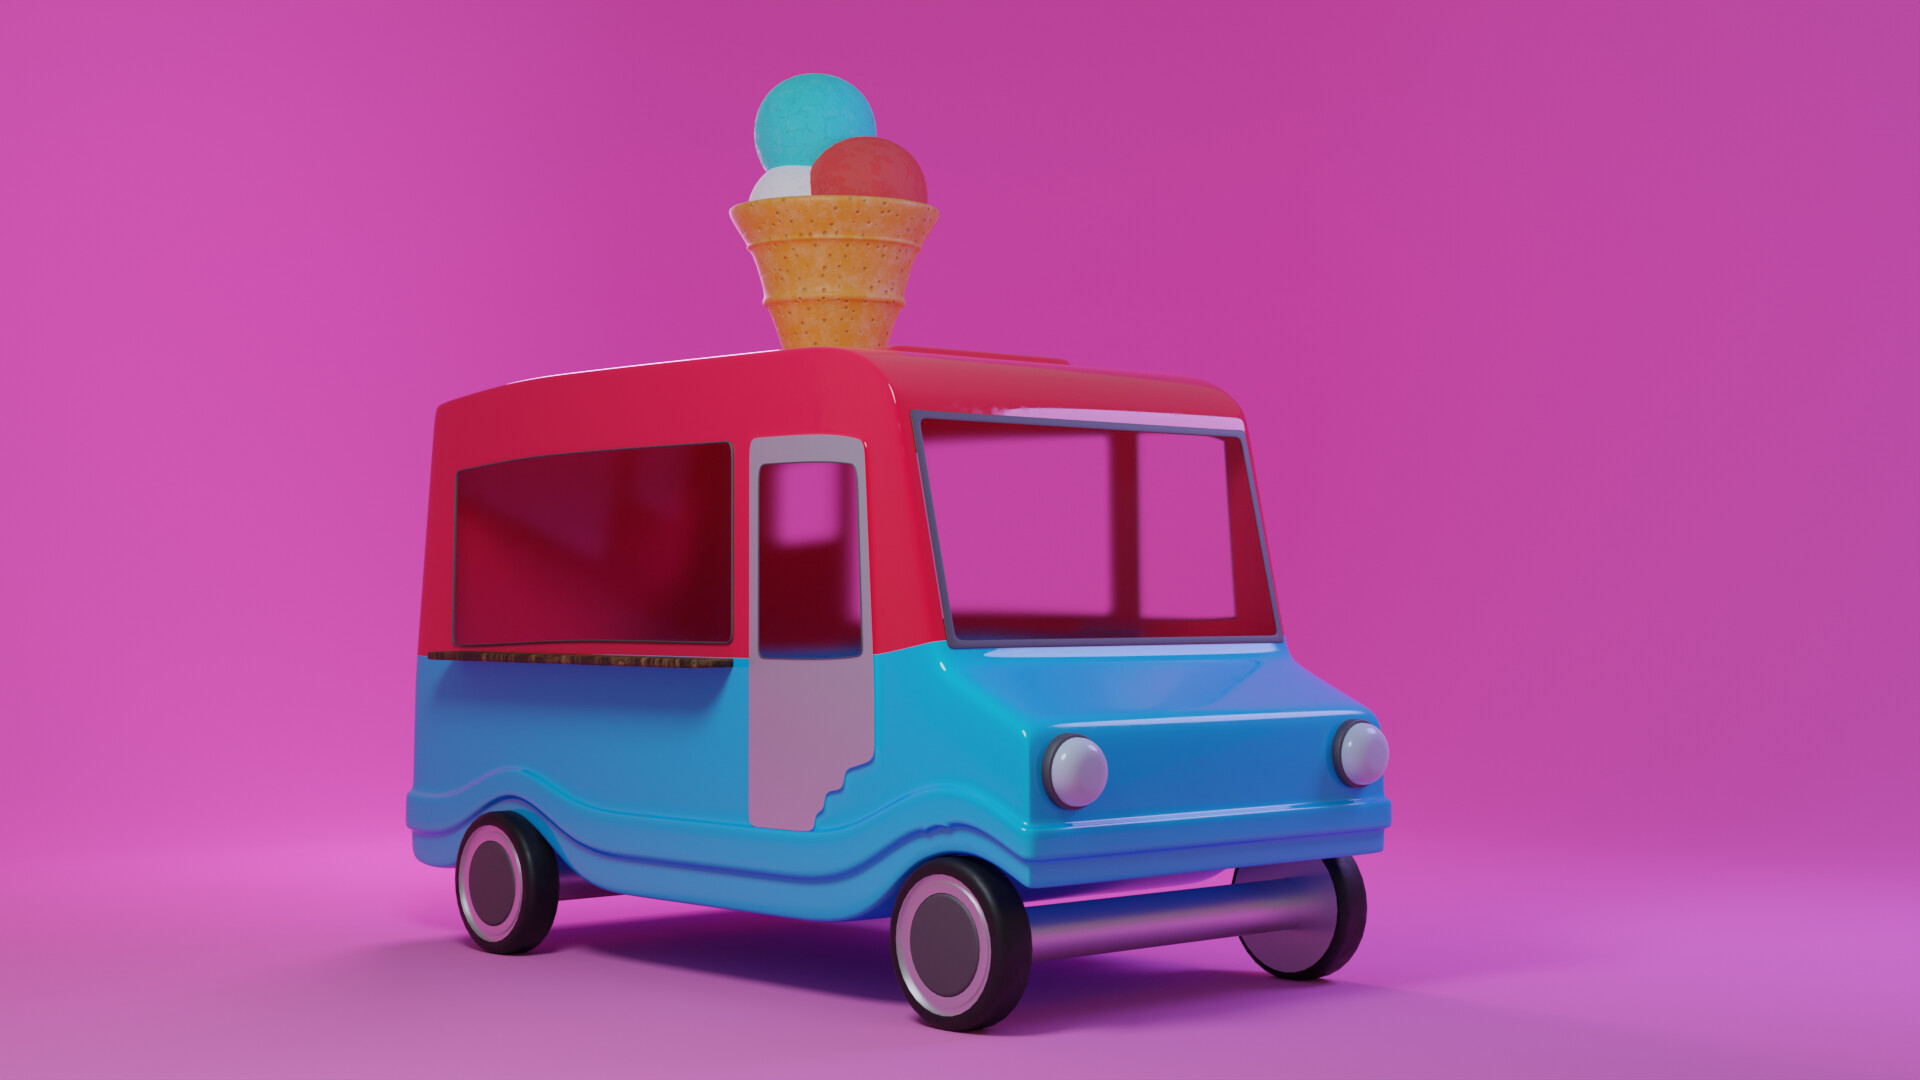 ArtStation - Ice cream truck